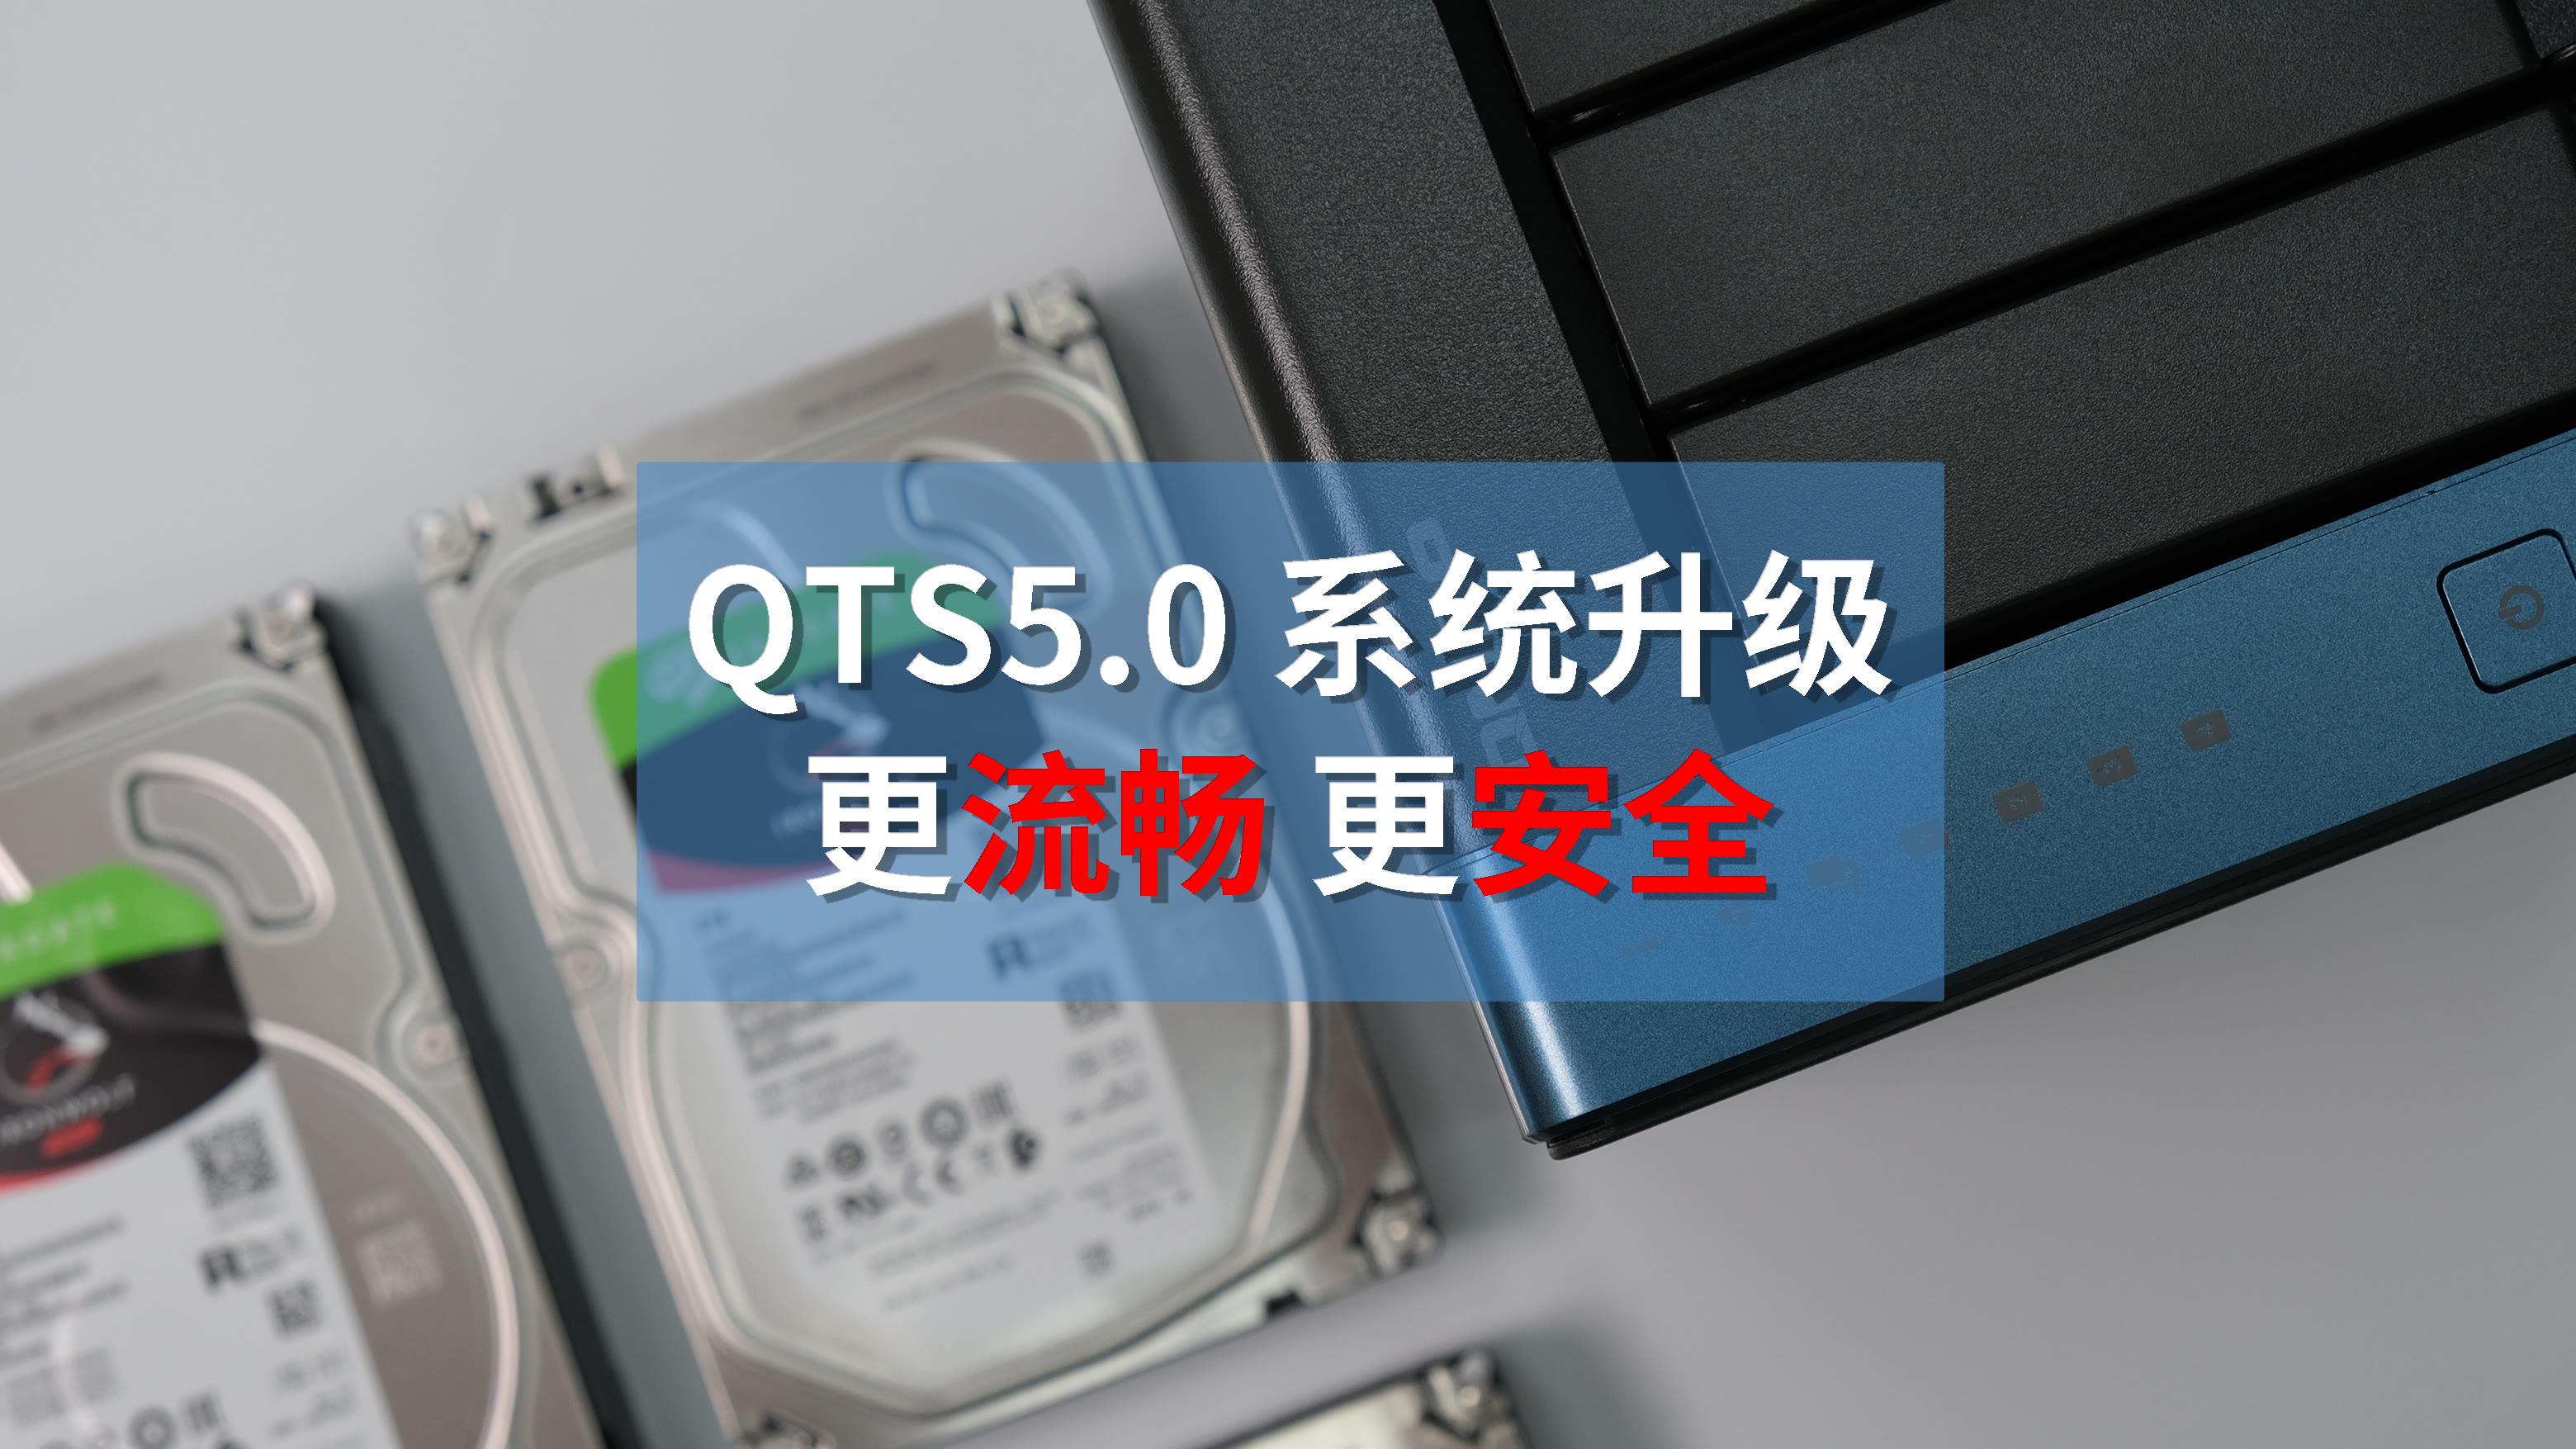 nas|威联通 NAS 升级了 流畅更安全 QTS5.0 系统体验